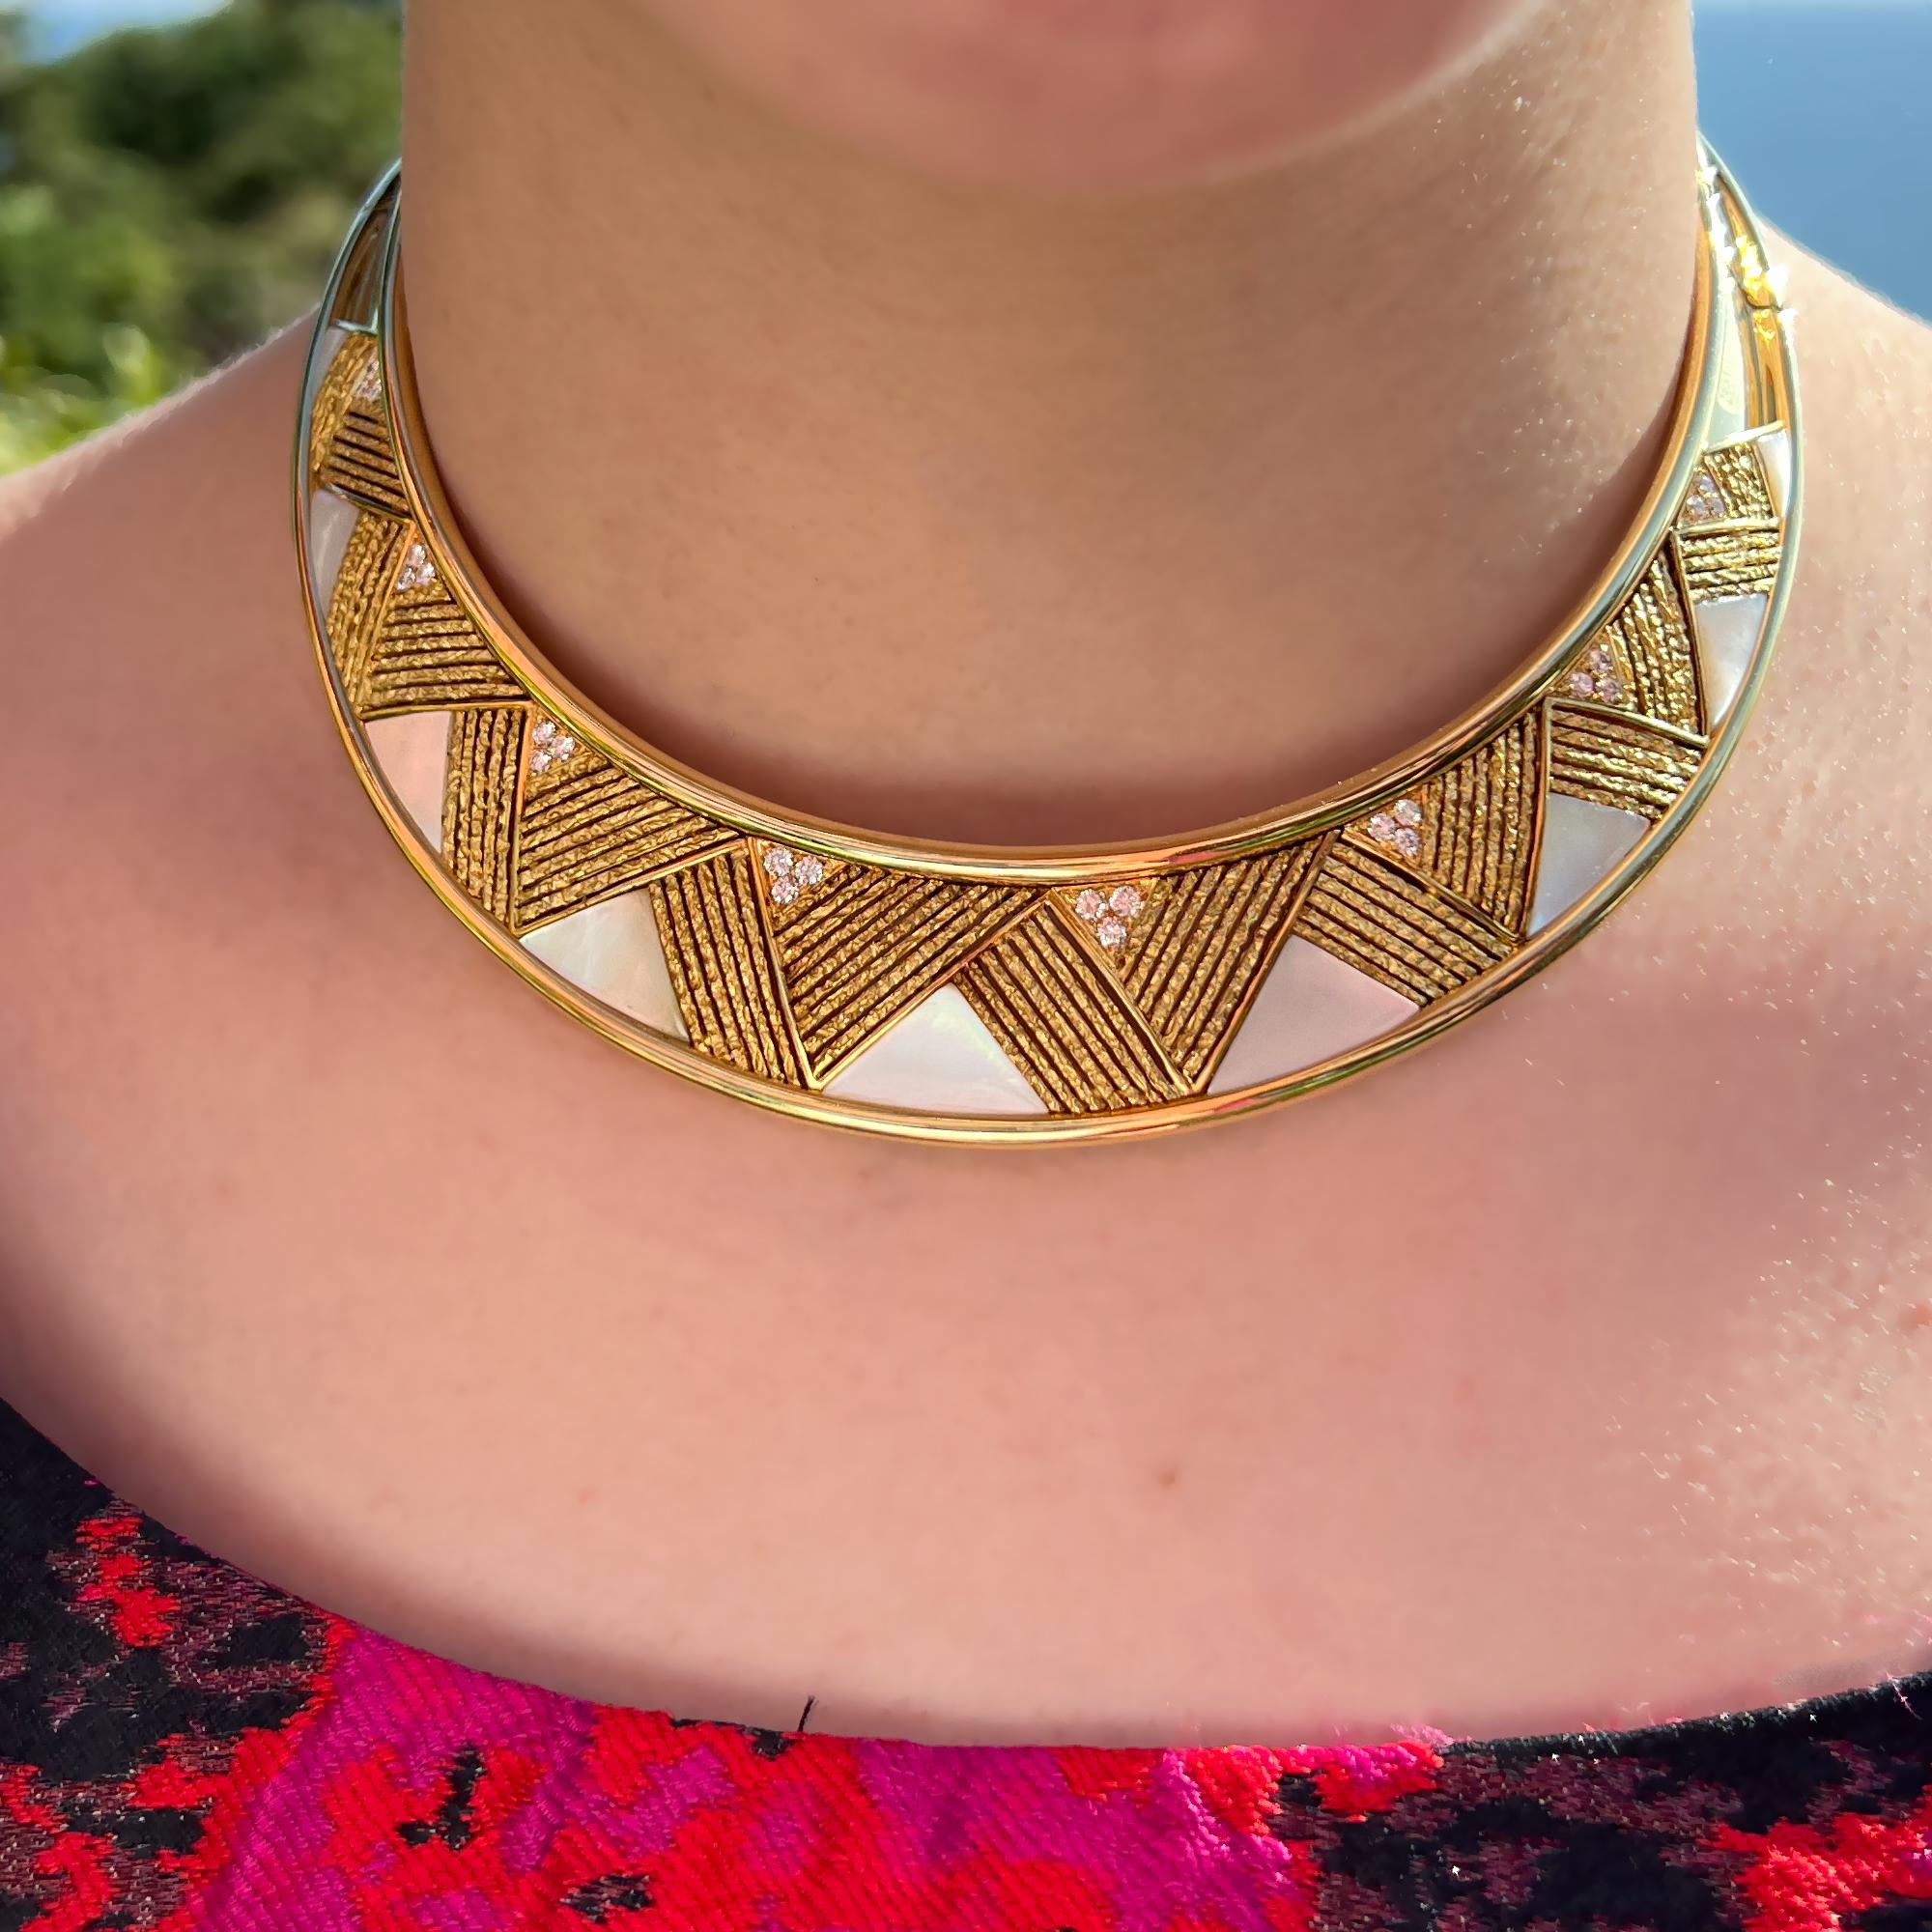 Wir präsentieren unser außergewöhnliches, starres Halsband der Haute Joaillerie aus elegantem 18-karätigem Gelbgold. Diese makellos gefertigte Halskette zeichnet sich durch ein glattes und perfekt angepasstes Design mit fast unsichtbaren Scharnieren